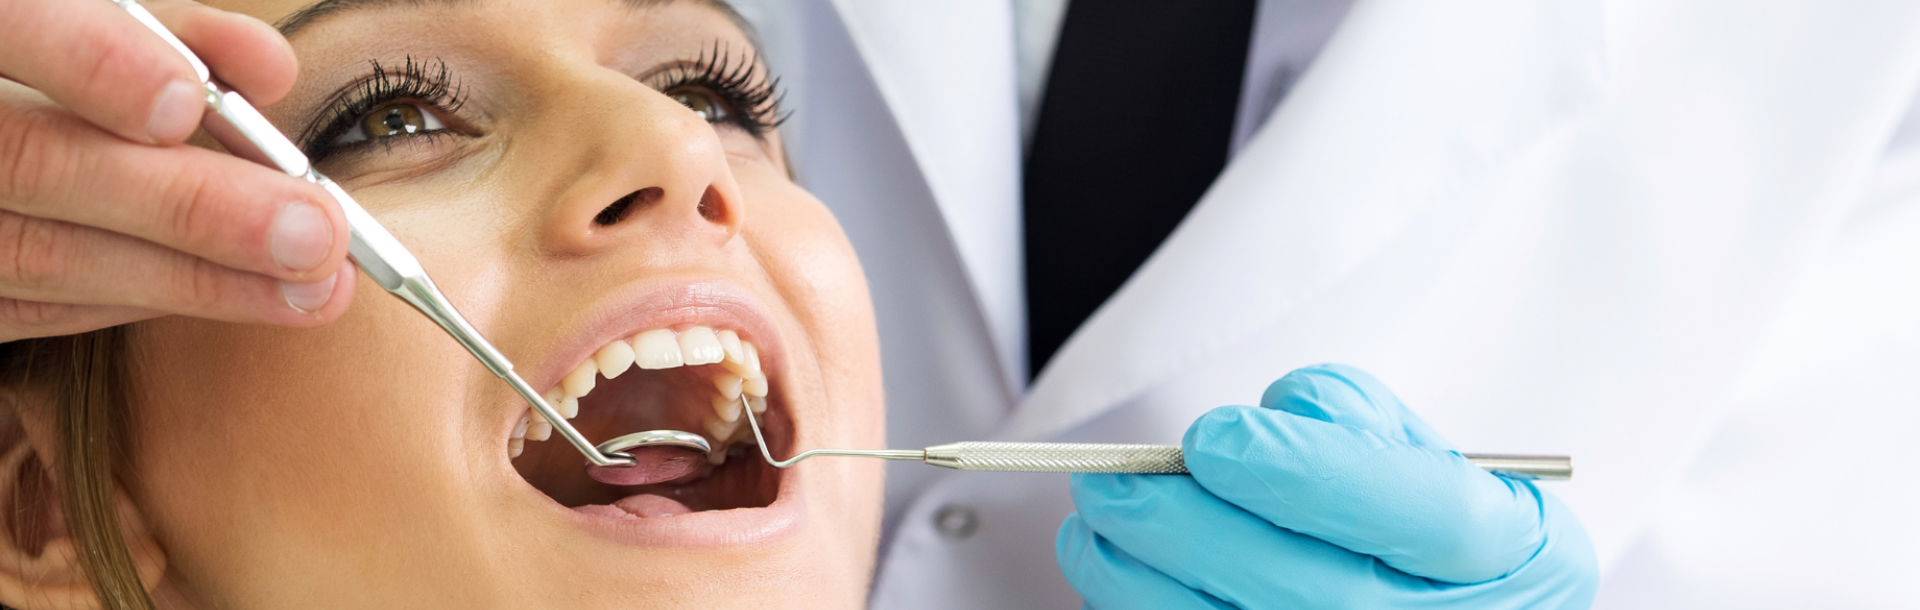 בית הספר לרפואת שיניים באוניברסיטת תל אביב מציע לקהל הרחב טיפולי שיניים מגוונים במרפאות מקצועיות 